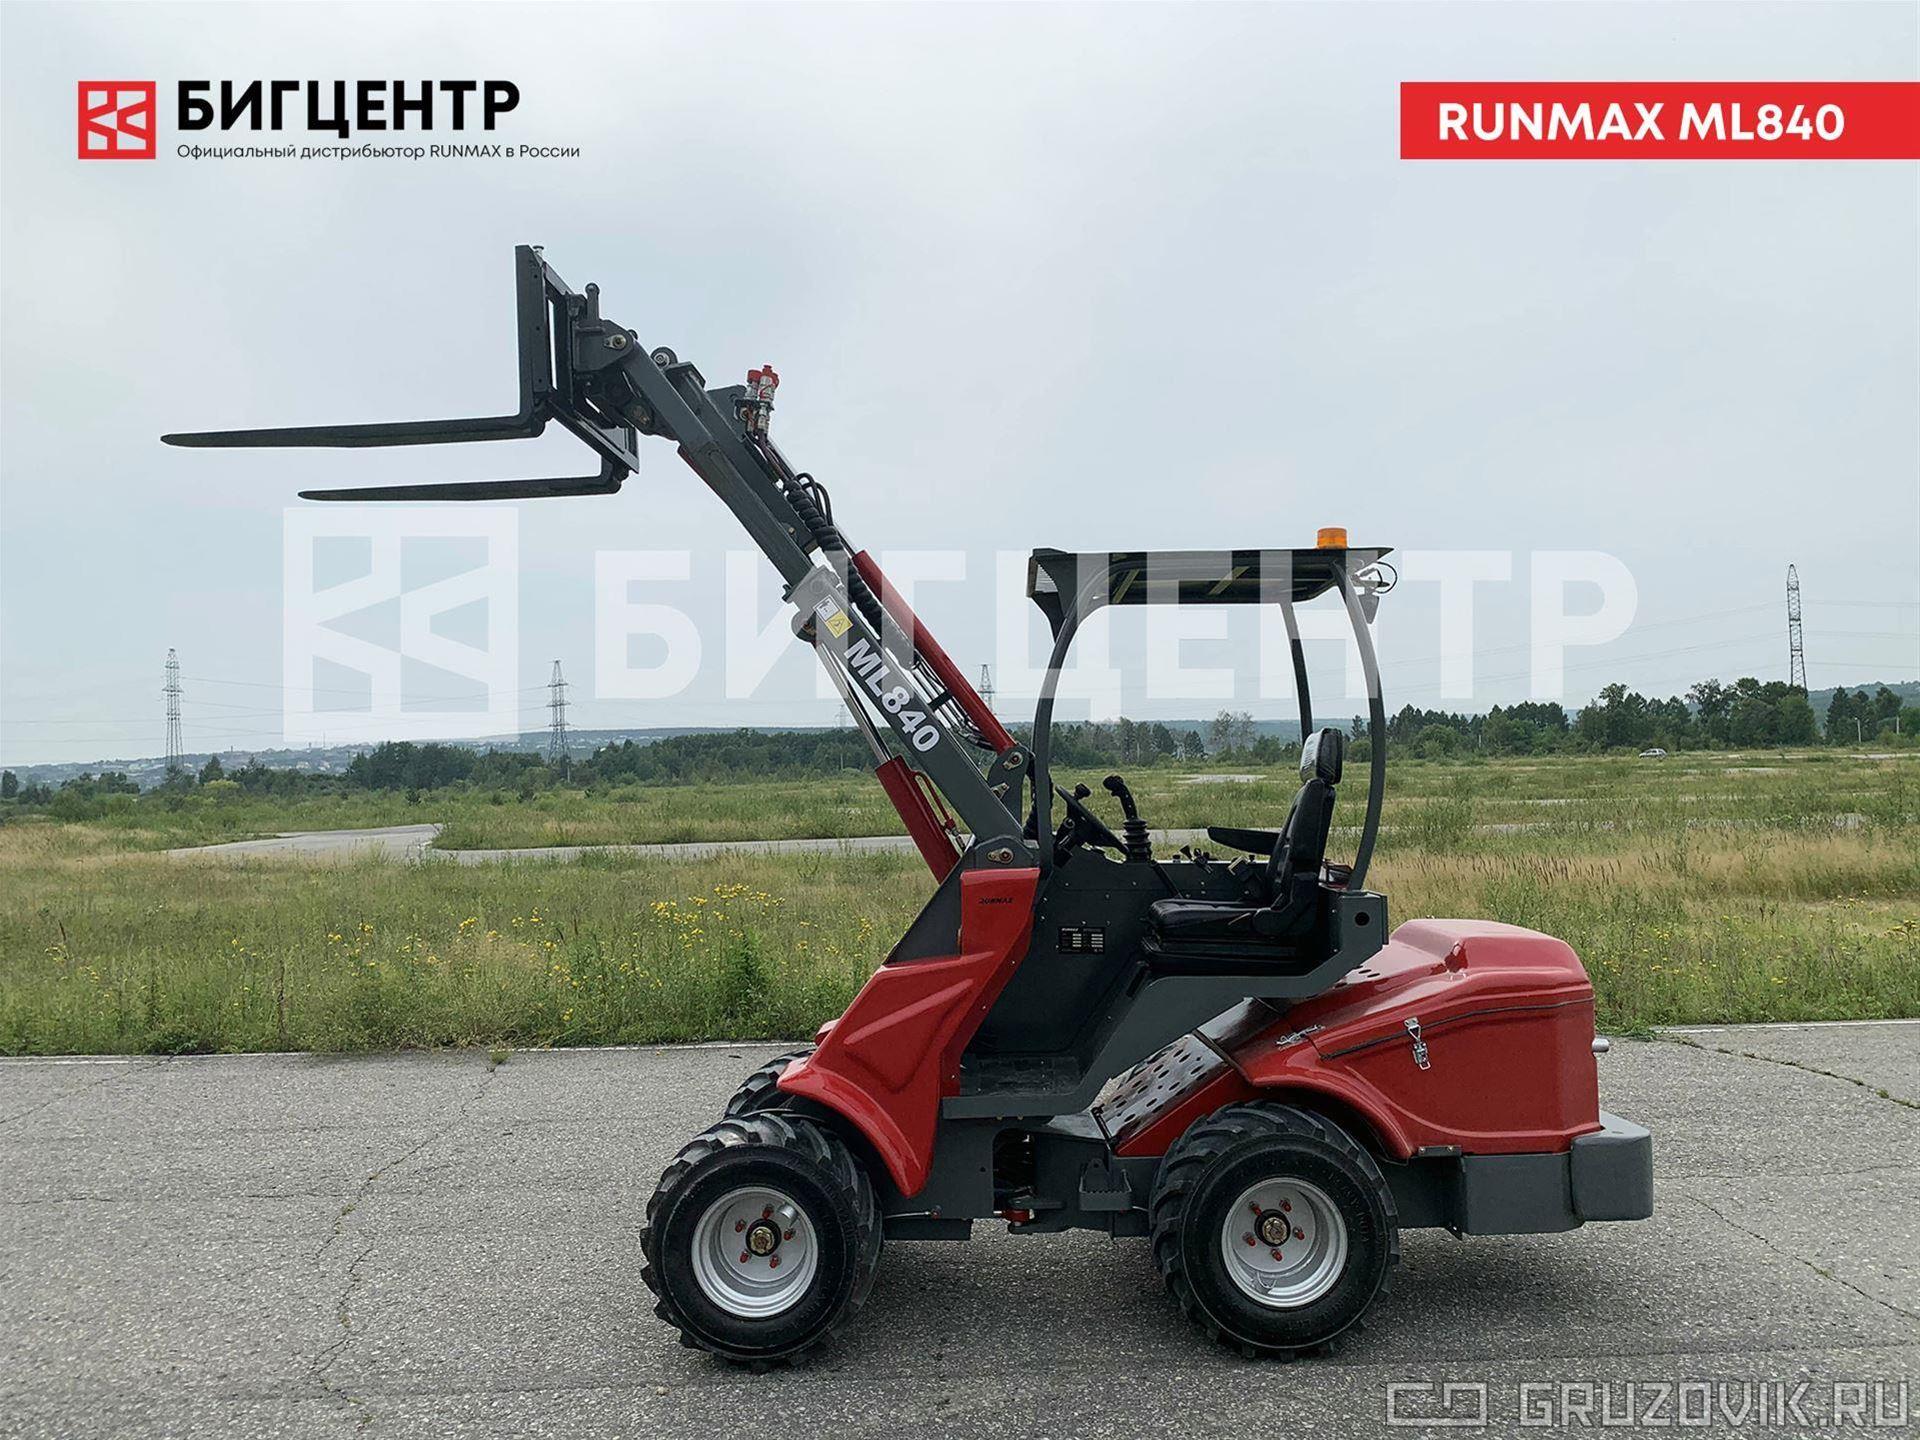 Новый Мини-погрузчик с бортовым поворотом Runmax ML840 в продаже  на Gruzovik.ru, 1 924 741 ₽